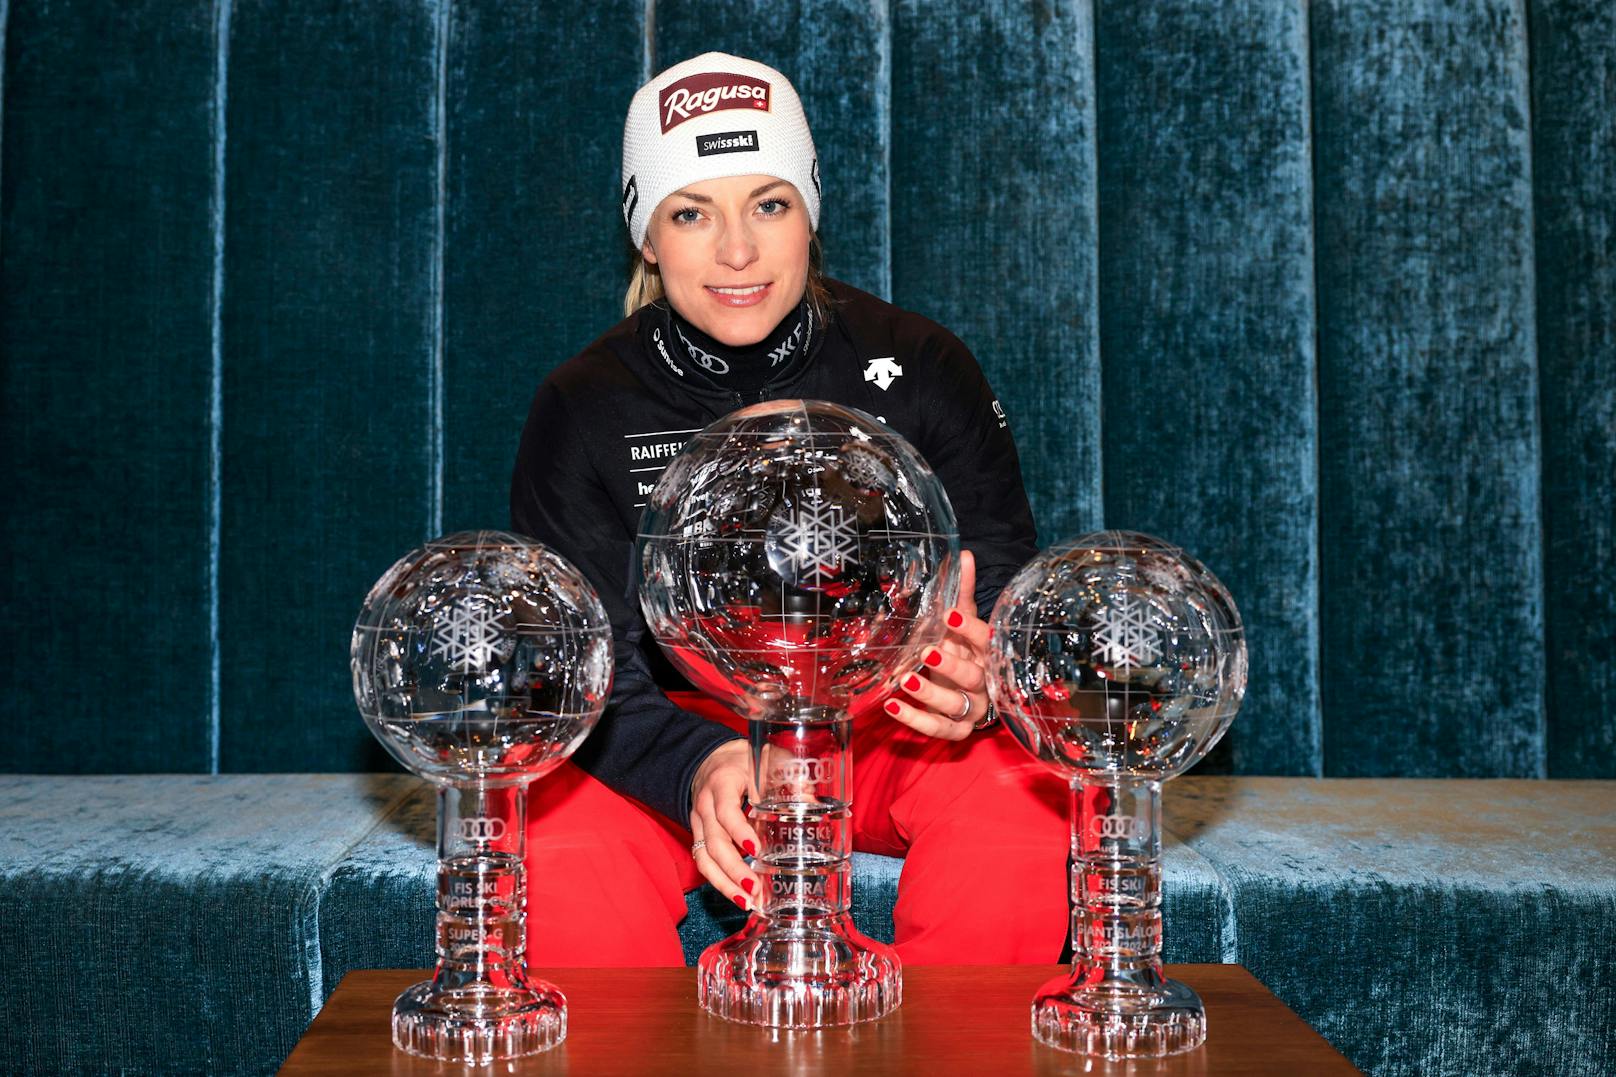 Die Schweizerin Lara Gut-Behrami war in dieser Saison nicht zu schlagen. Neben der großen Kristallkugel sicherte sich die Schweizerin den Sieg im Riesentorlauf- und Super-G-Weltcup.